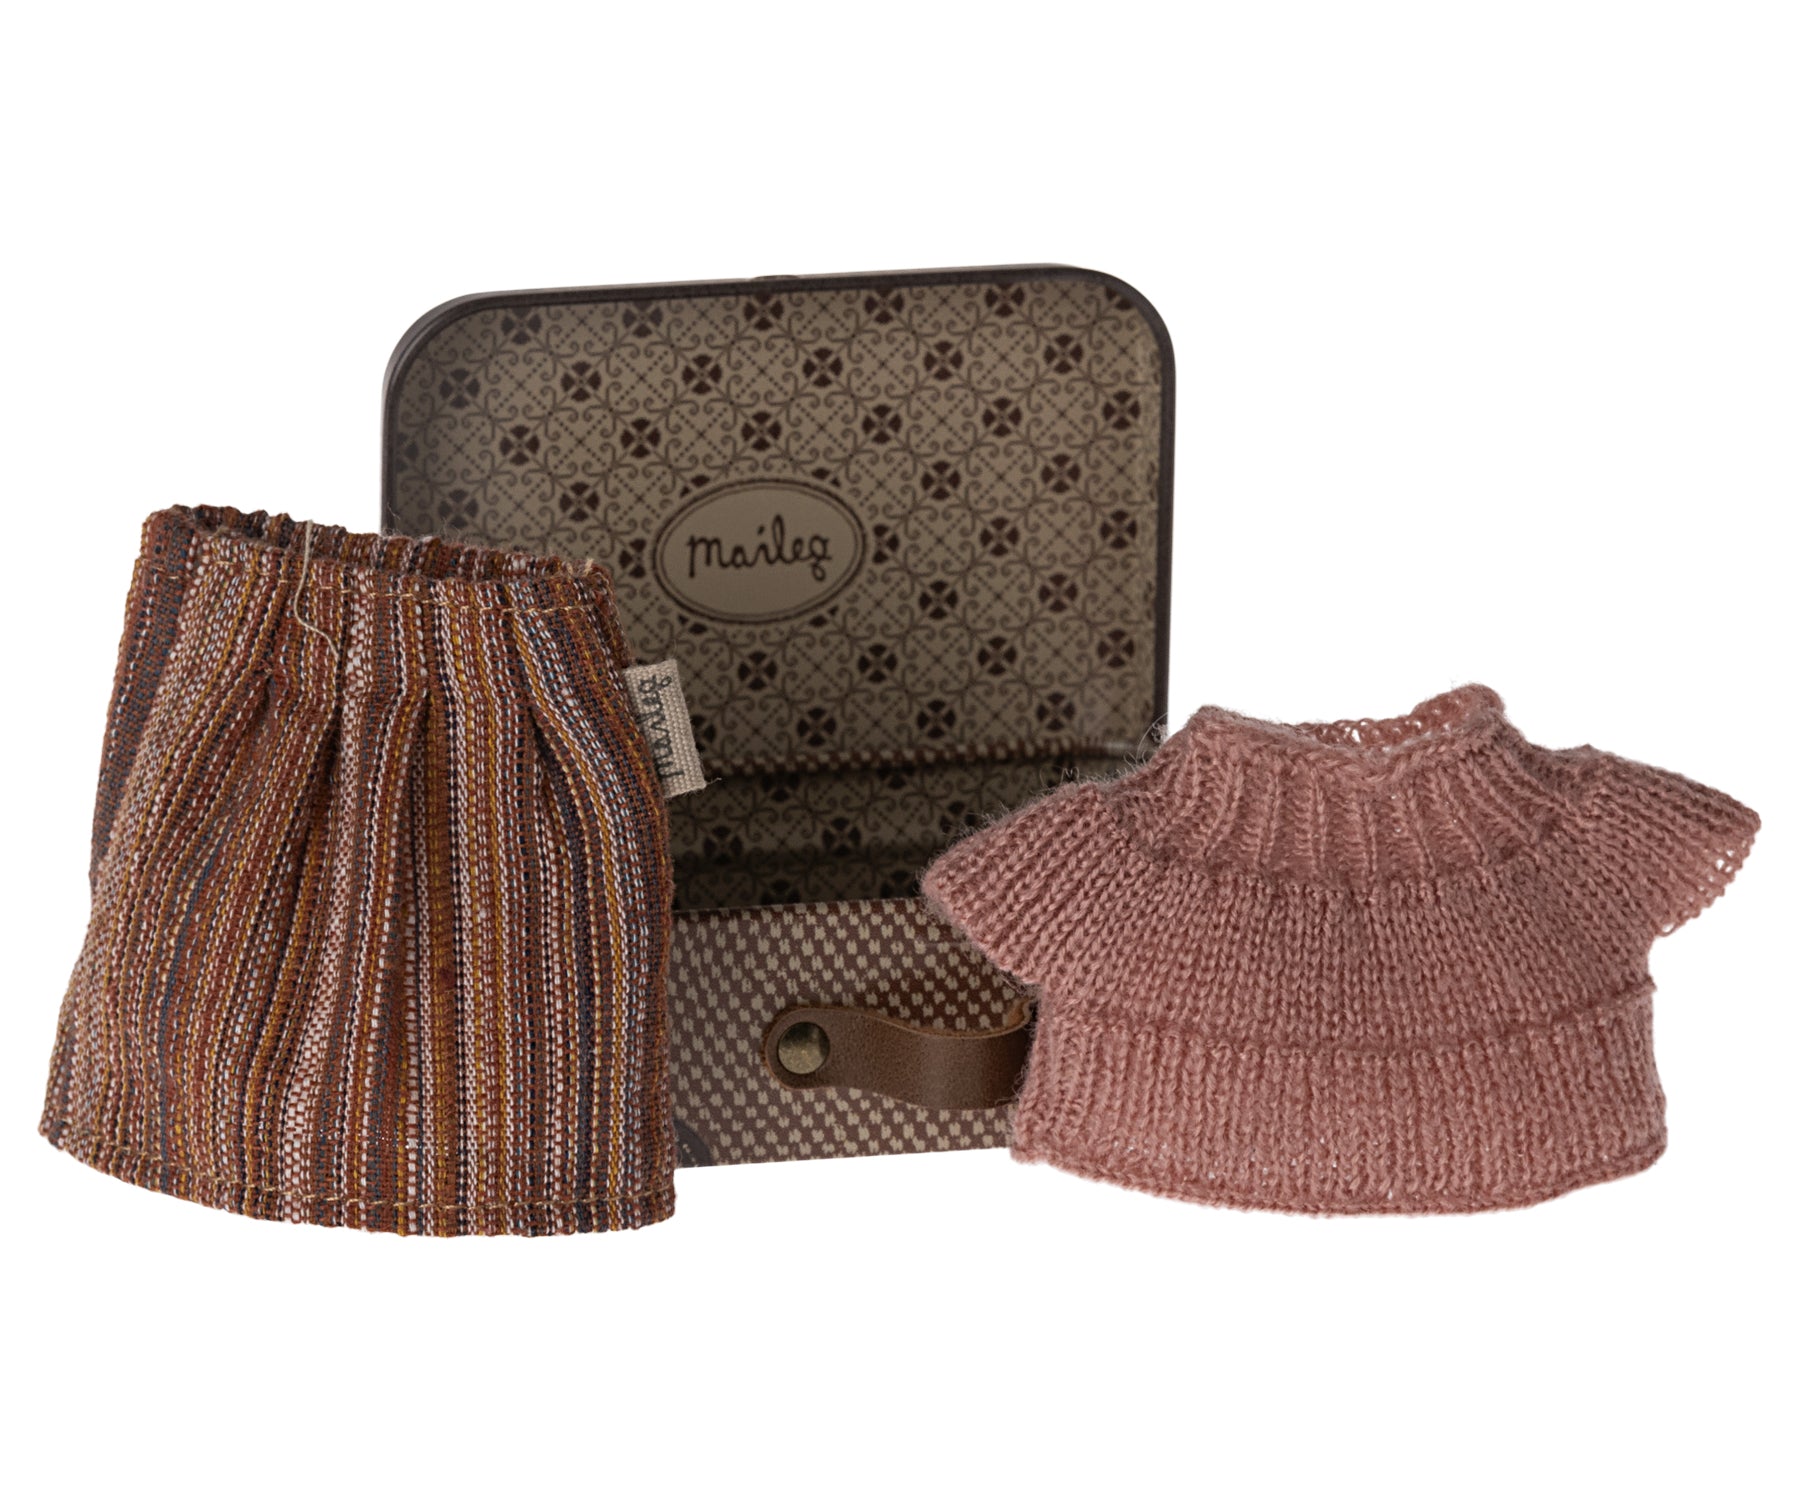 Blouse et jupe tricotées Maileg dans une valise, Grandma Mouse